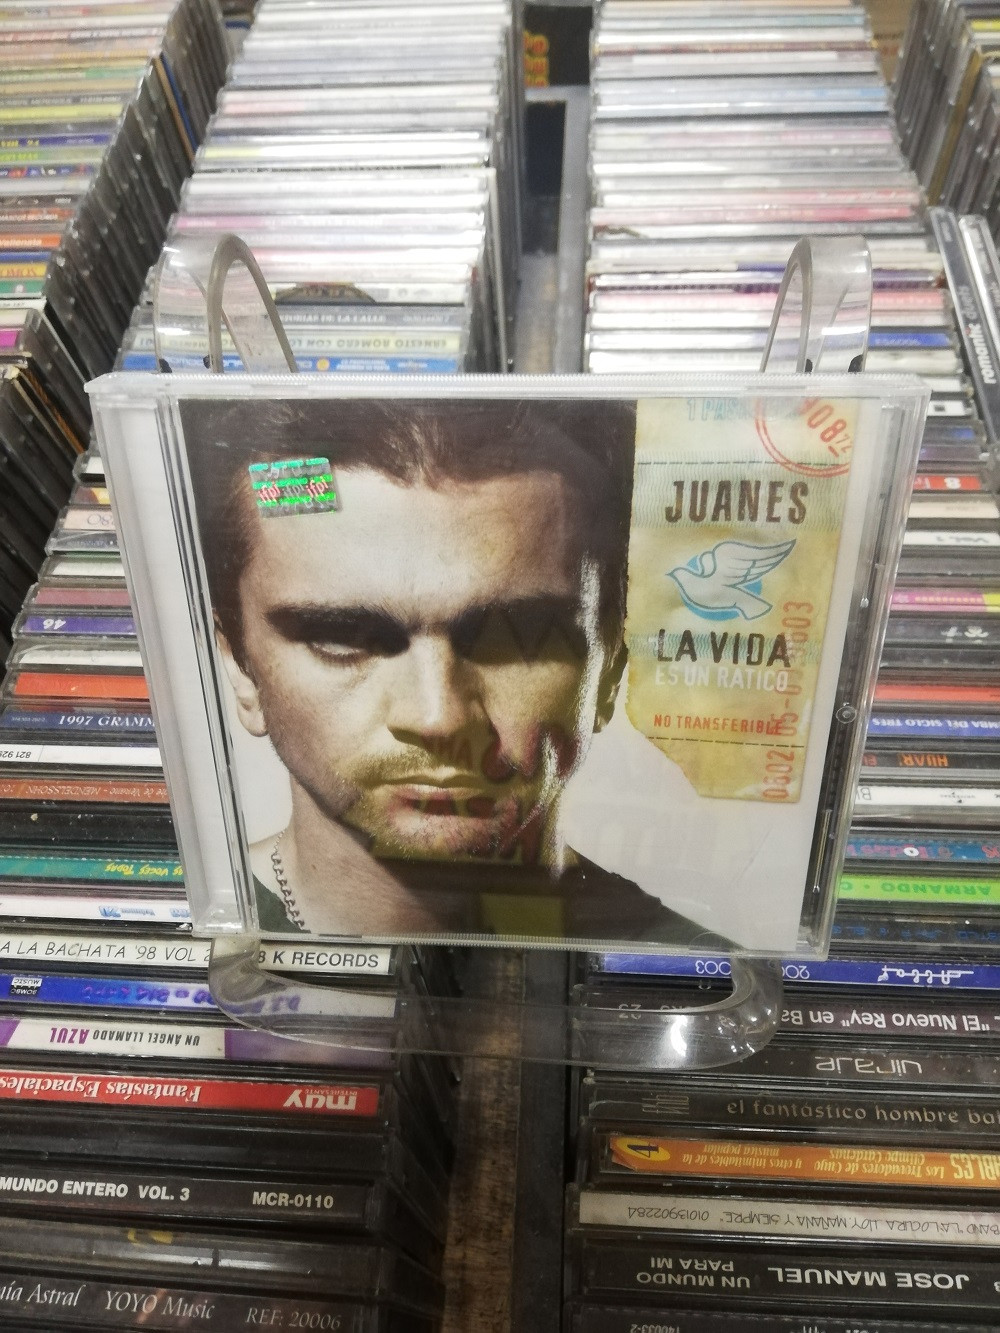 Imagen CD JUANES - LA VIDA ES UN RATICO 1